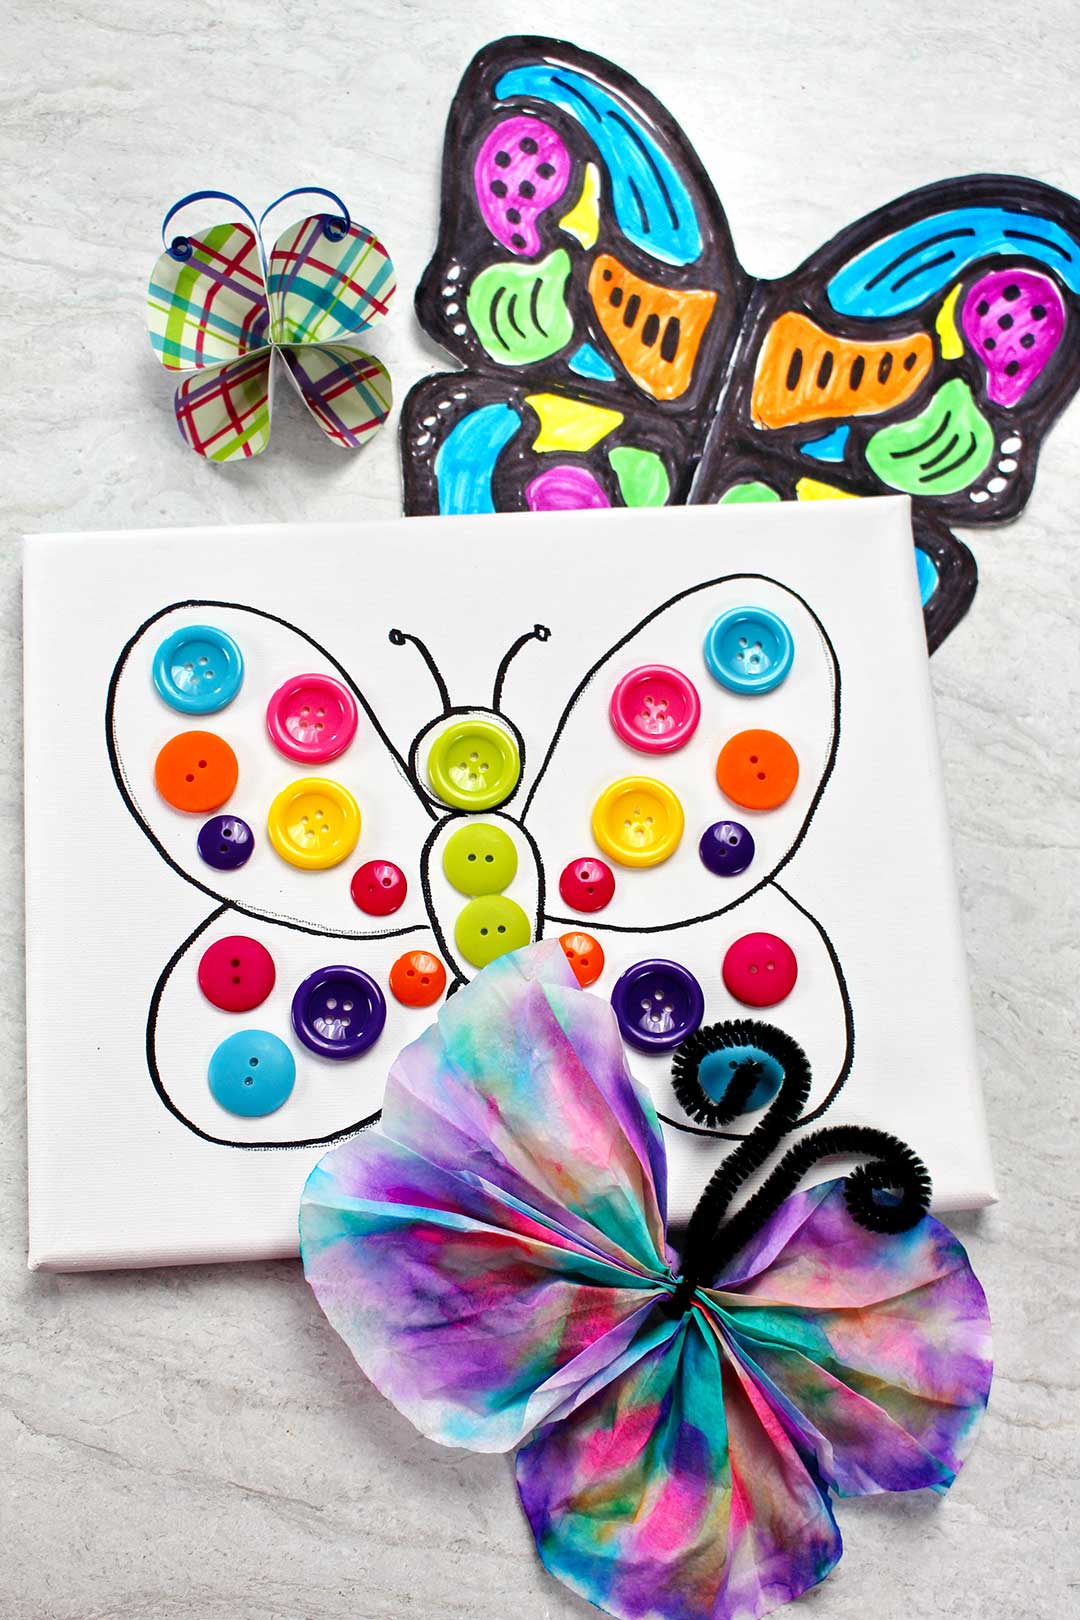 Divers bricolages de papillons colorés présentés sur welcometonanas.com